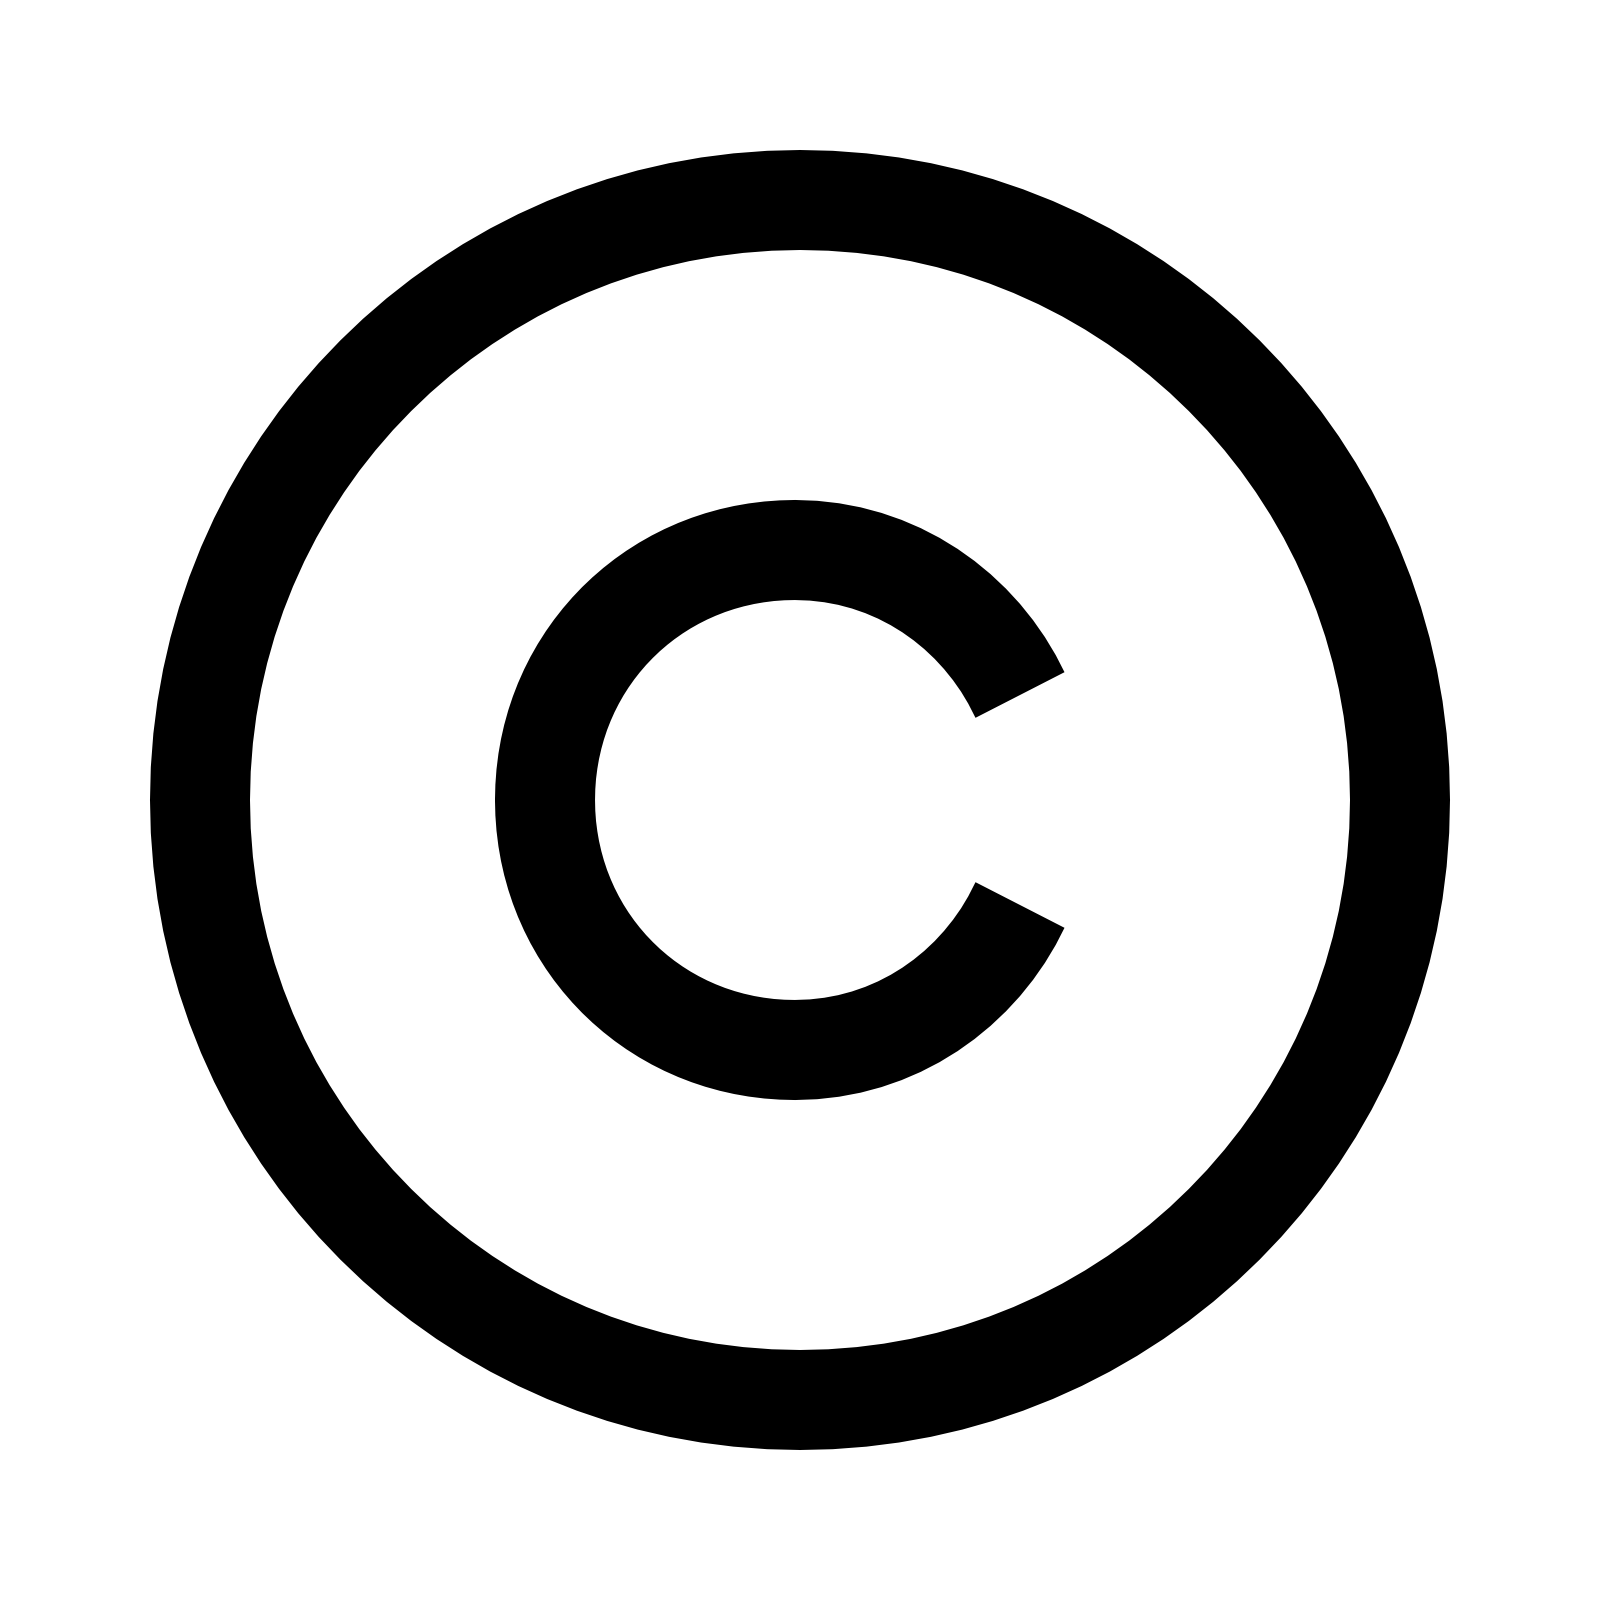 Droits d'auteur